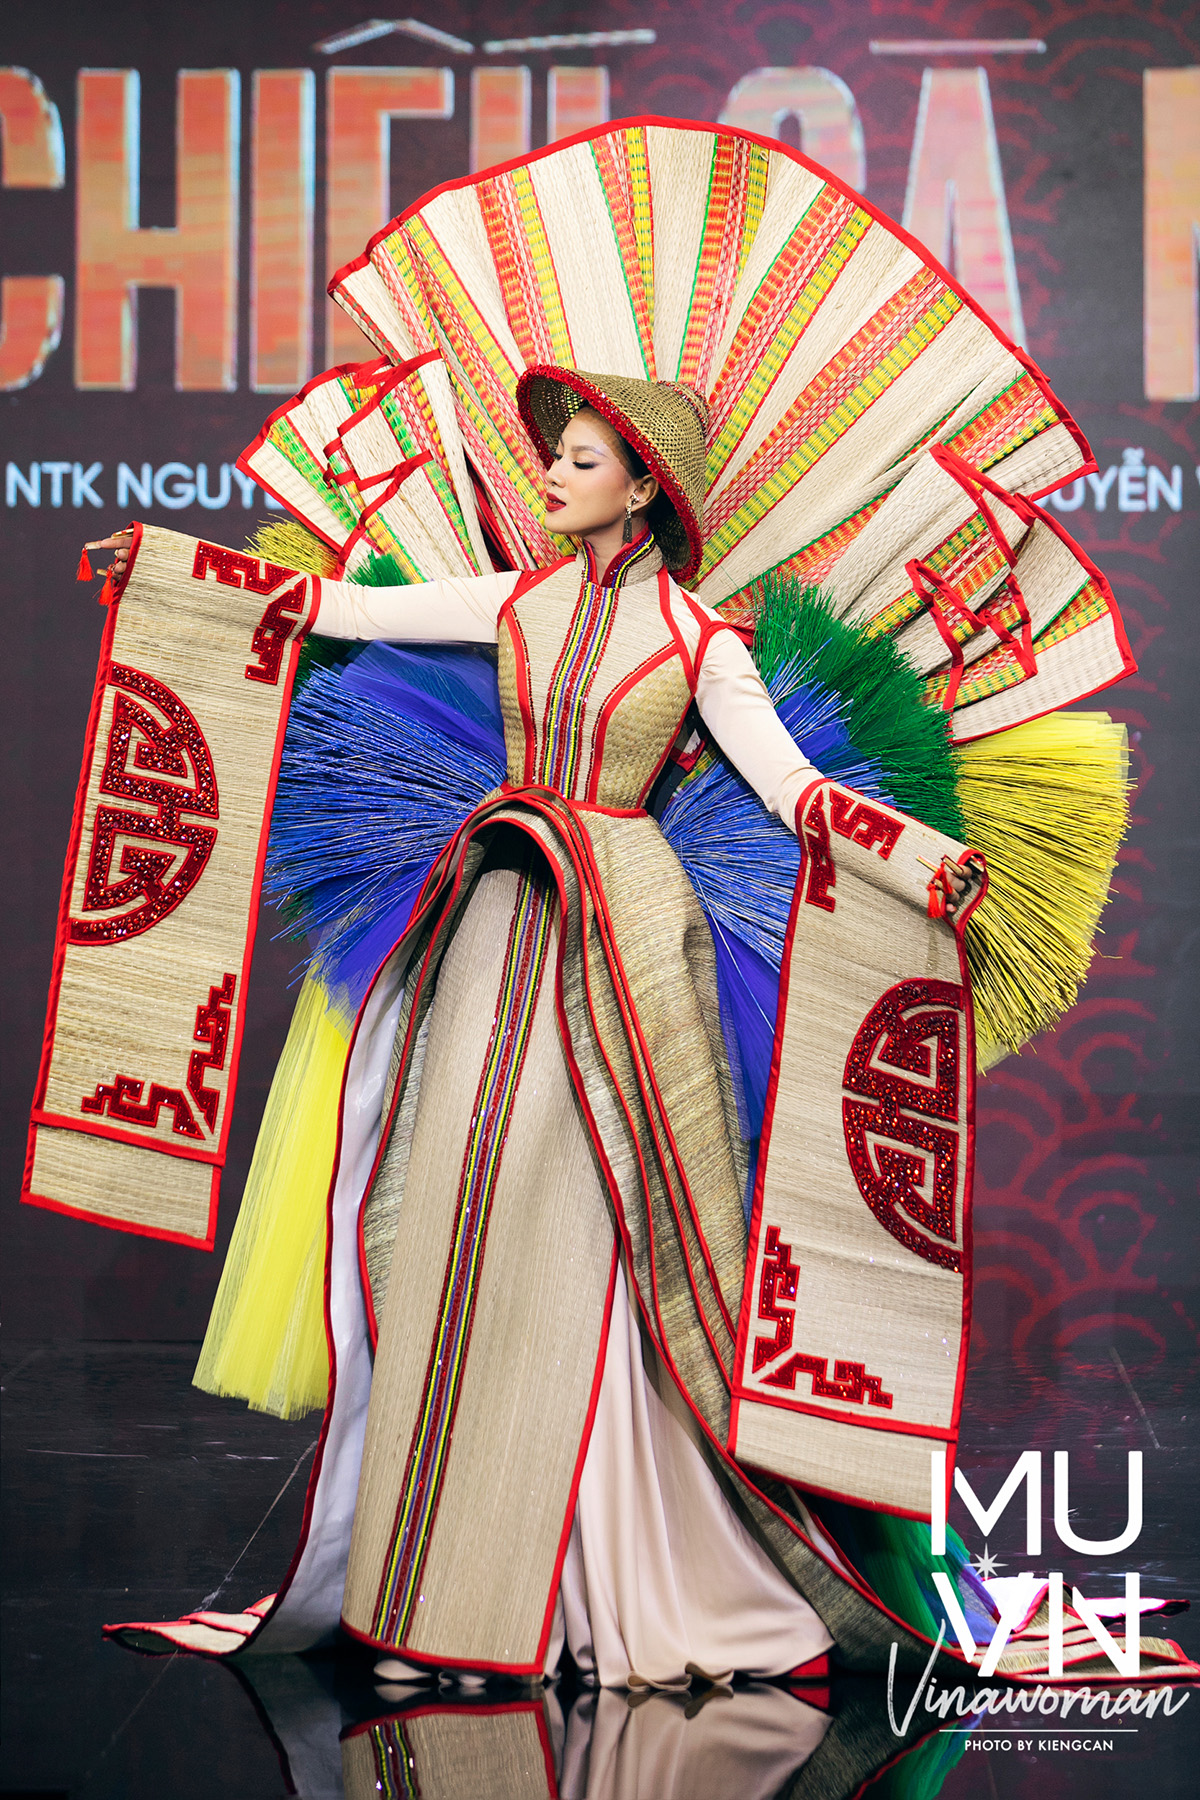 Trang phục dân tộc Việt là một phần không thể thiếu của văn hóa Việt Nam. Với các hình ảnh về trang phục dân tộc Việt này, bạn sẽ được thấy sự độc đáo, tinh tế và đẹp mắt của những bộ trang phục này. Hãy cùng khám phá những trang phục dân tộc Việt đẹp nhất.